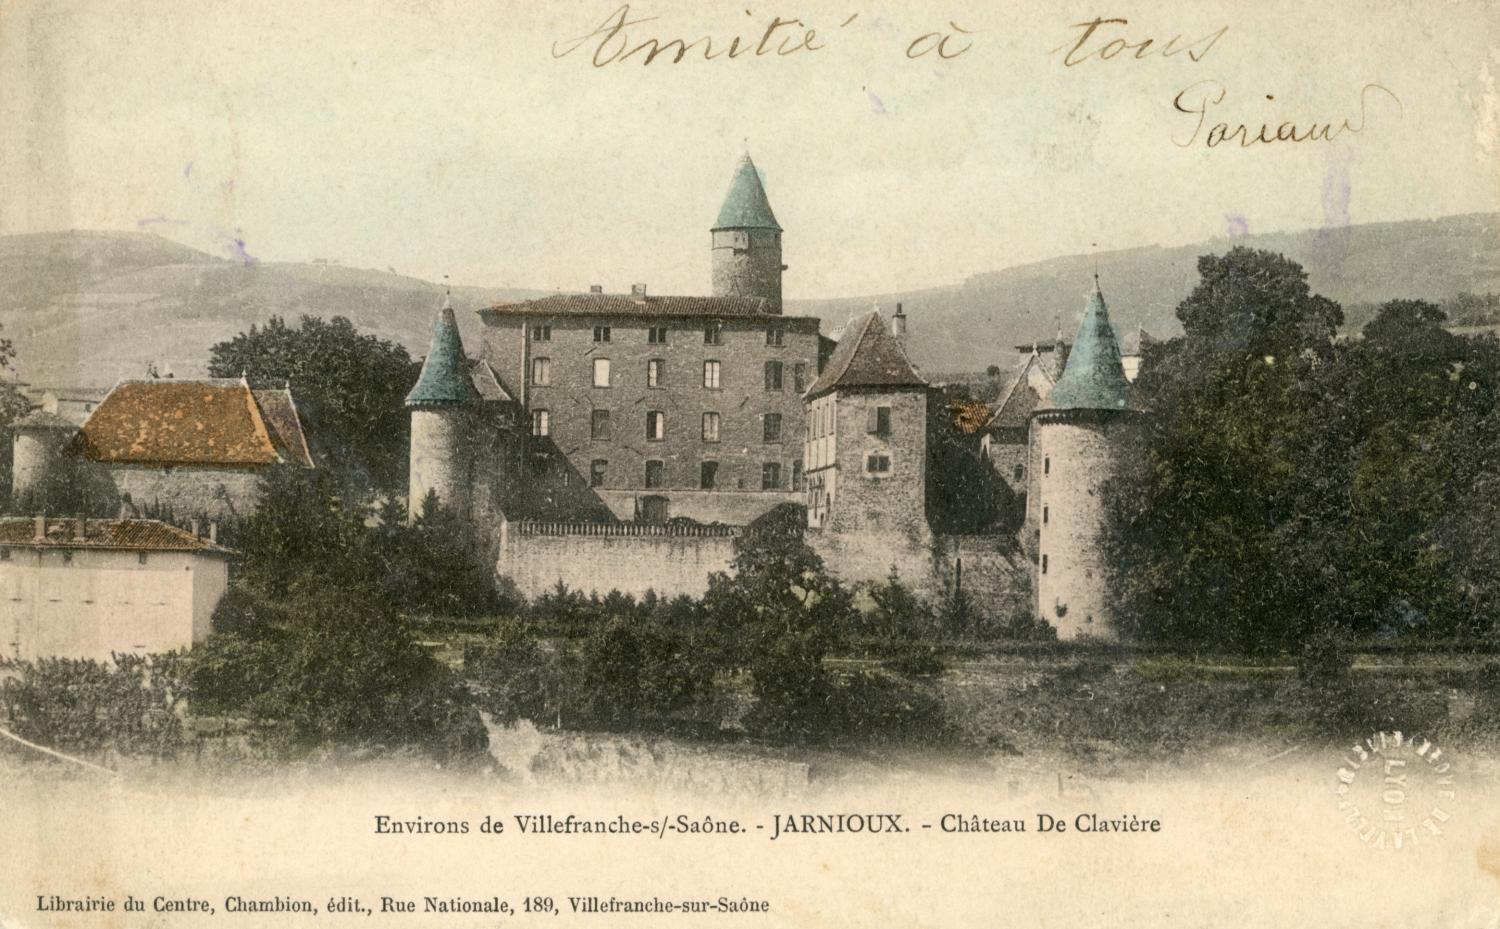 Environ de Villefranche-sur-Saône. - Jarnioux. - Château de Clavière